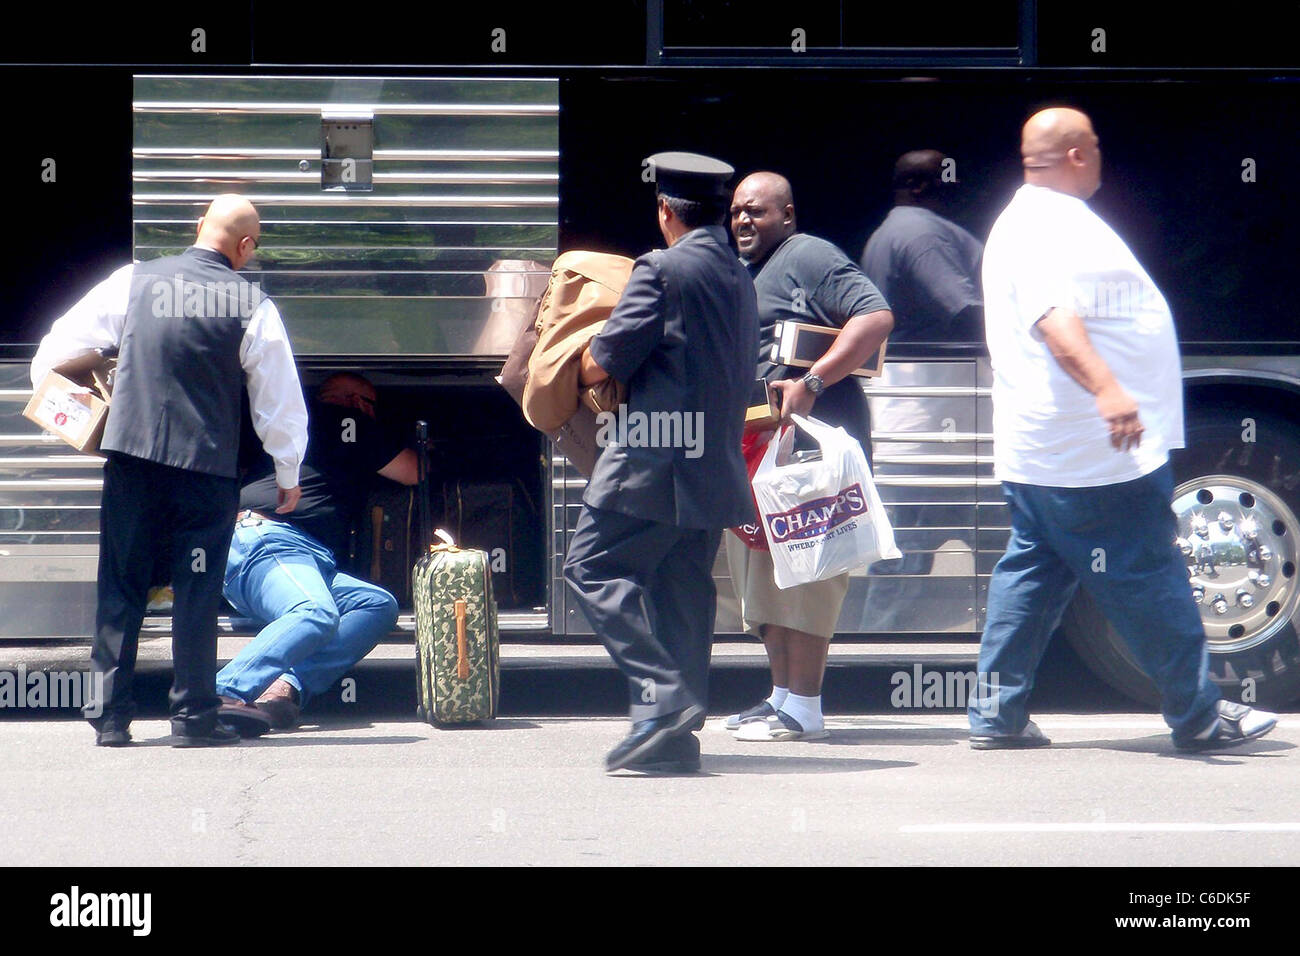 L'entourage de Nelly dépose bagages de son bus de tournée à l'extérieur de  son hôtel de Manhattan New York City, USA - 04.06.10 Ian Garland Photo  Stock - Alamy